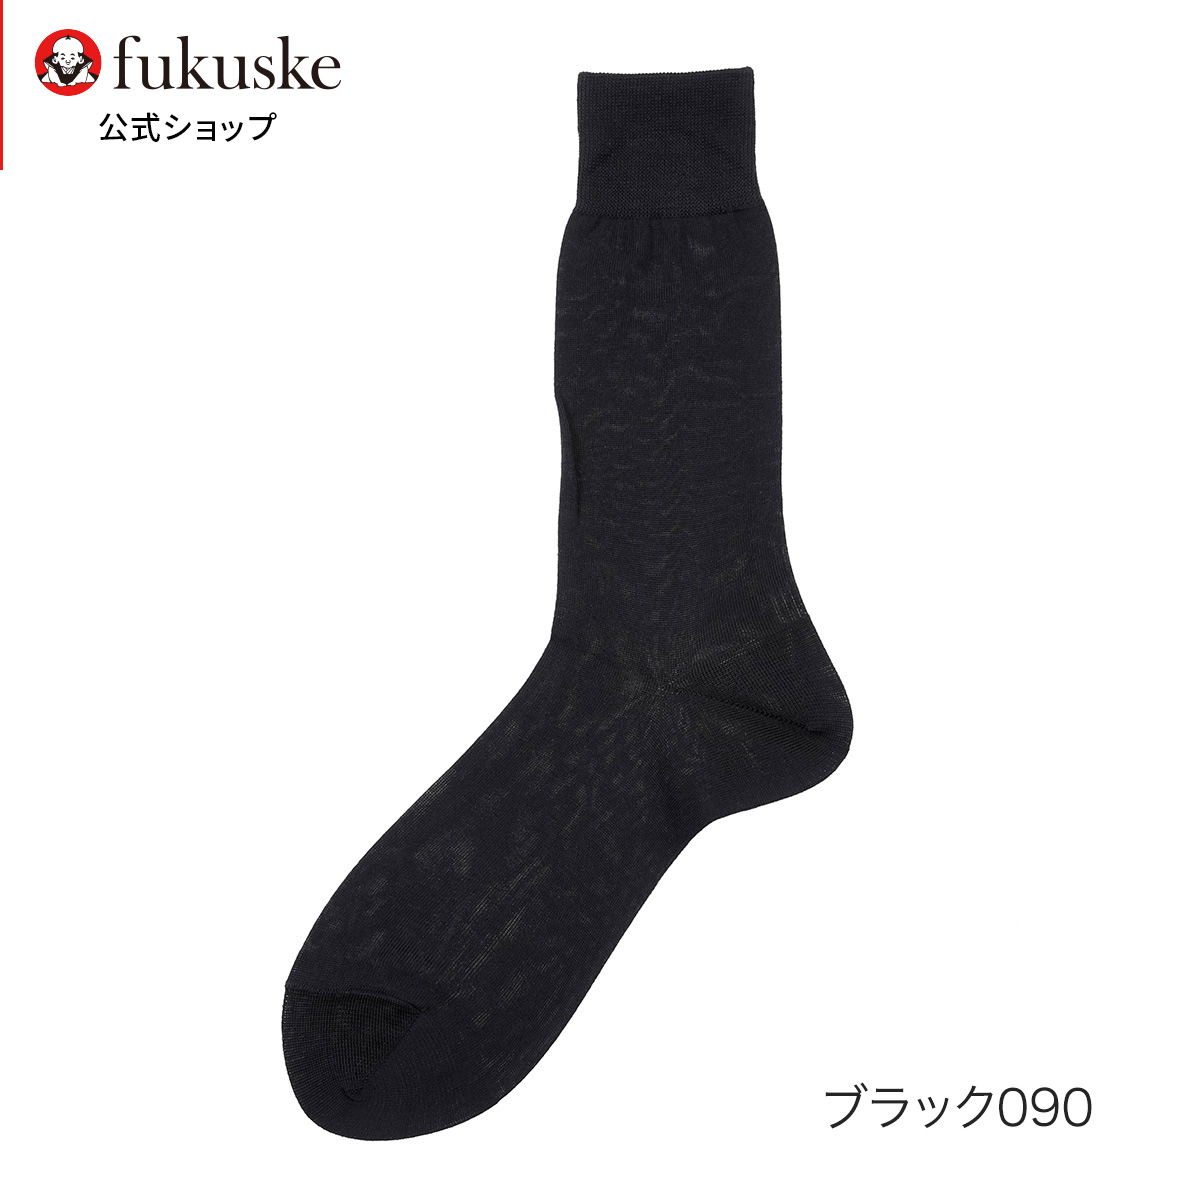 靴下 メンズ 礼装 平無地 クルー丈 03890w 紳士 男性 fukuske フクスケ 福助 公式